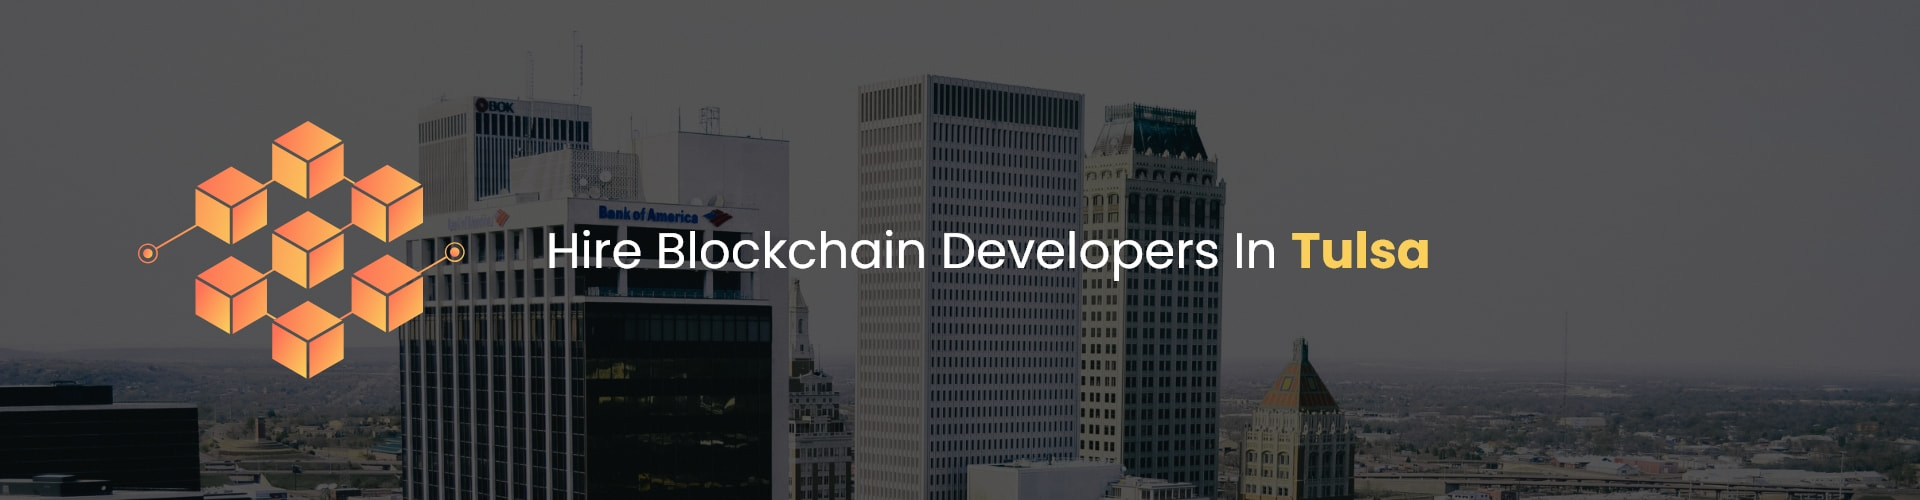 hire blockchain developers in tulsa